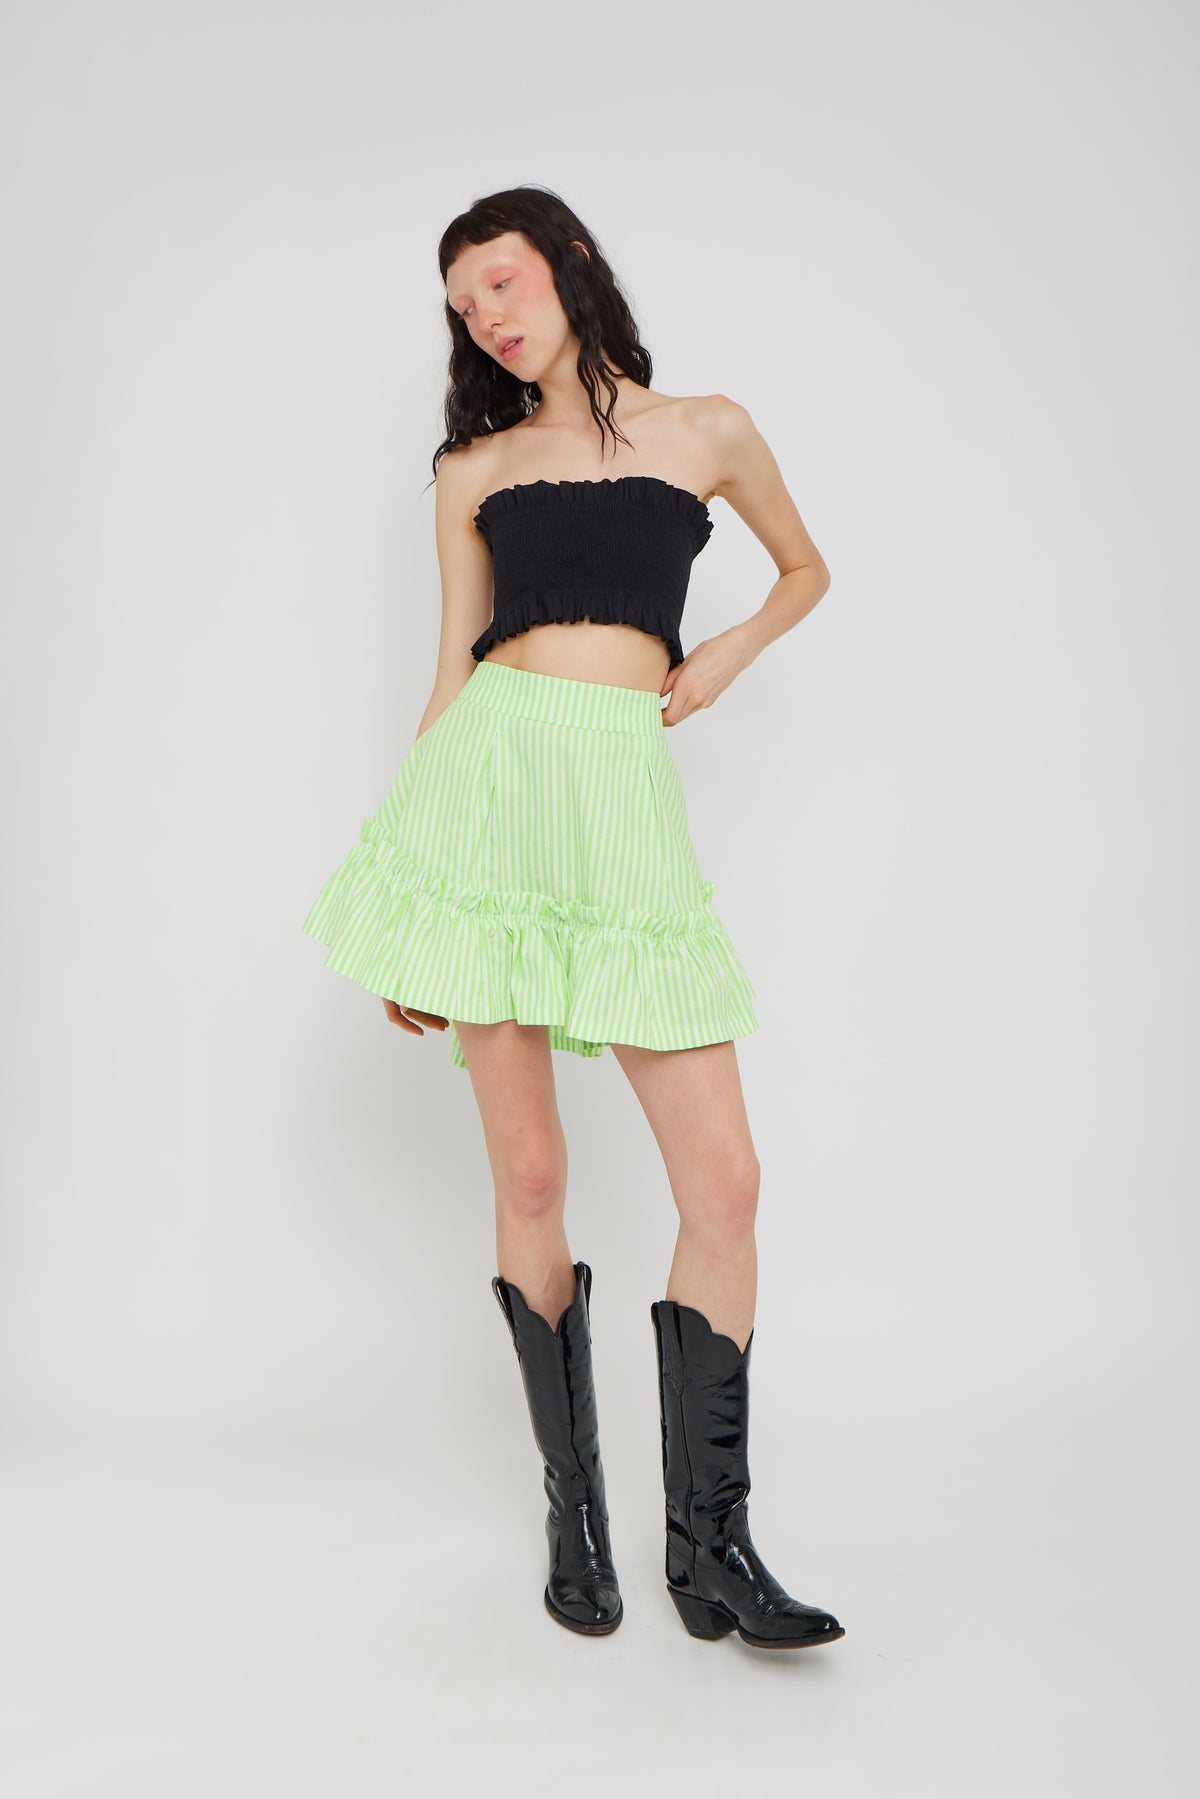 Quinoa Skirt Green Candy Stripe